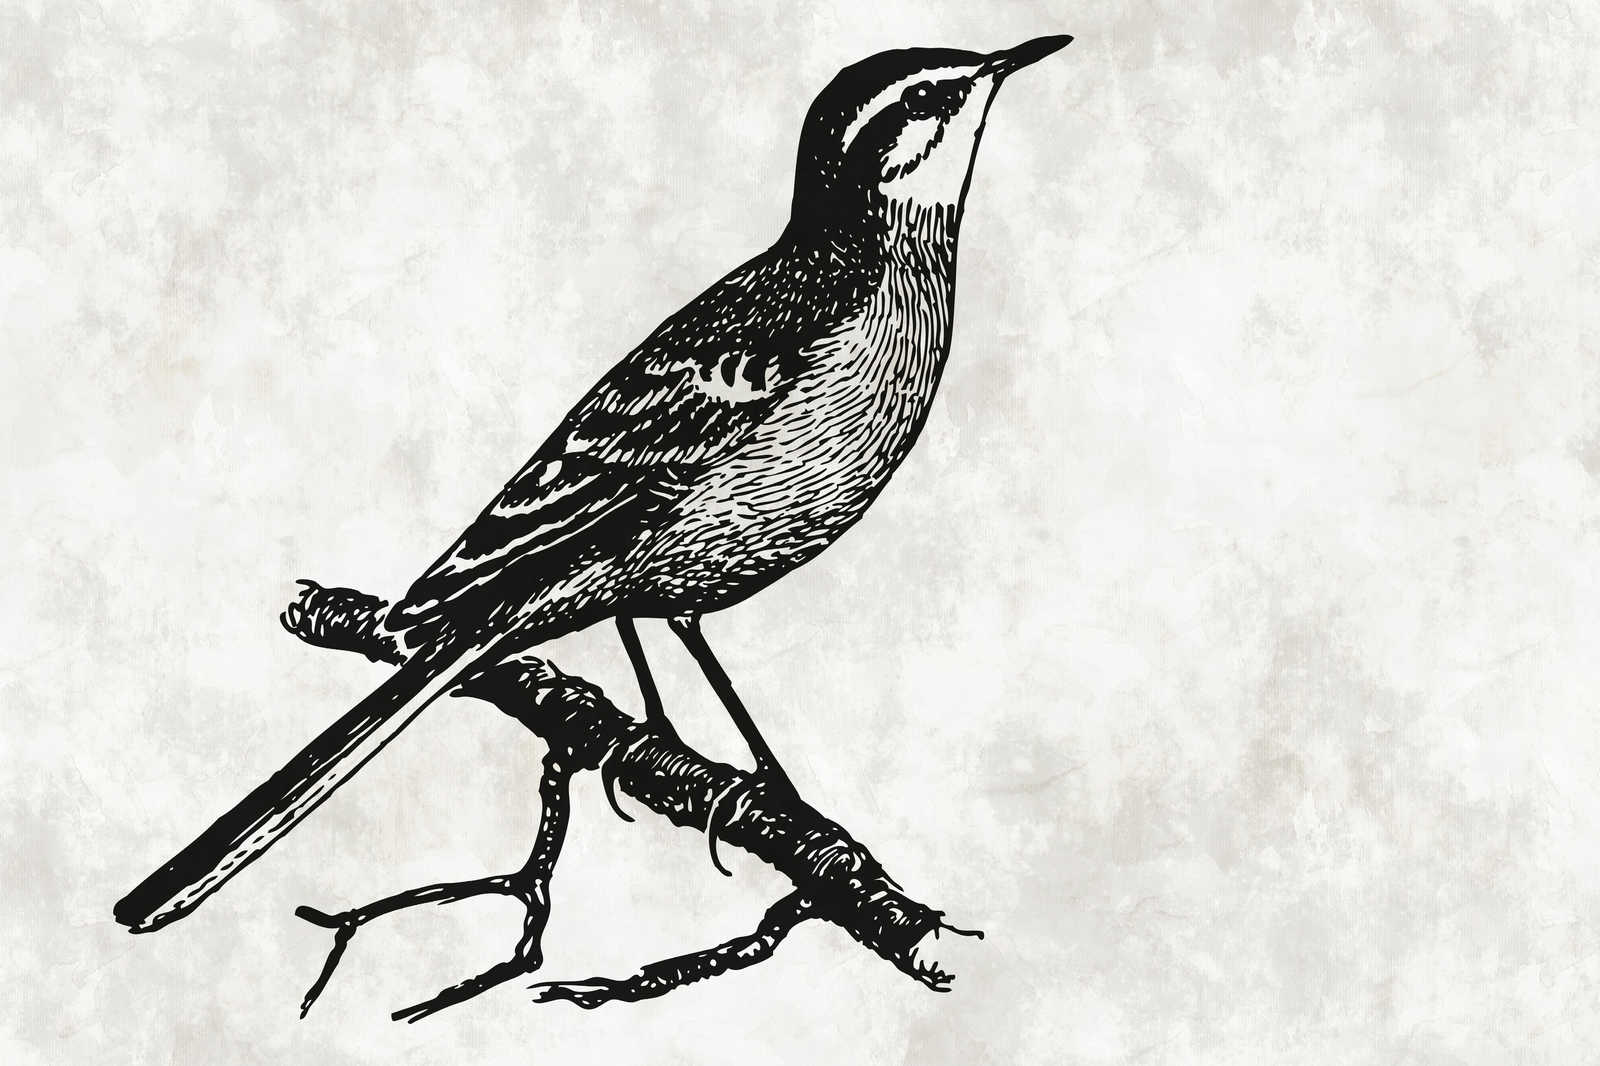             Quadro su tela di uccelli in stile carattere con ottica in gesso - 0,90 m x 0,60 m
        